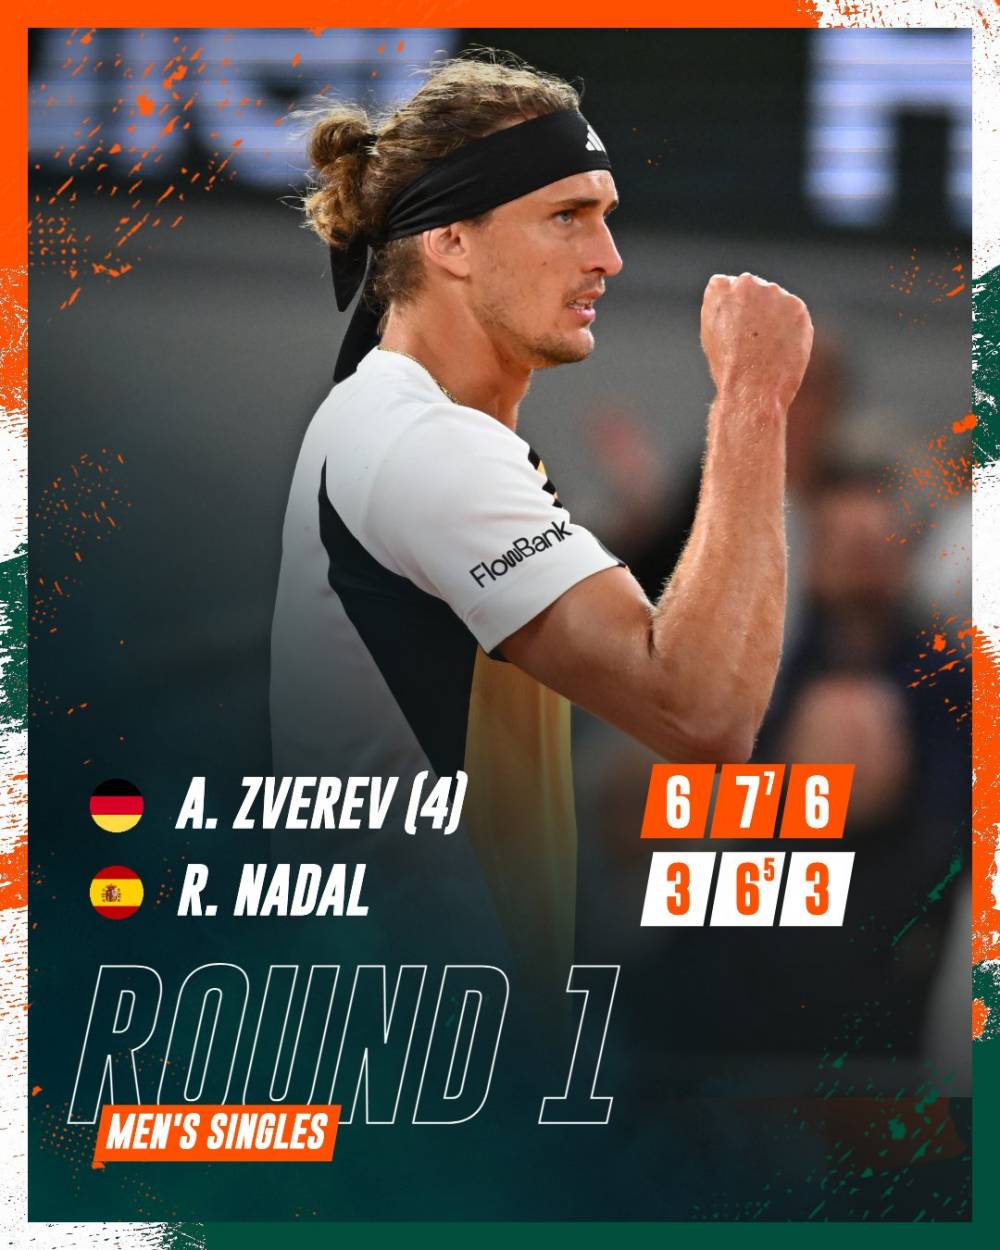 Tay vợt người Đức thắng 3 set sau 3 giờ 6 phút. Ảnh: Roland Garros